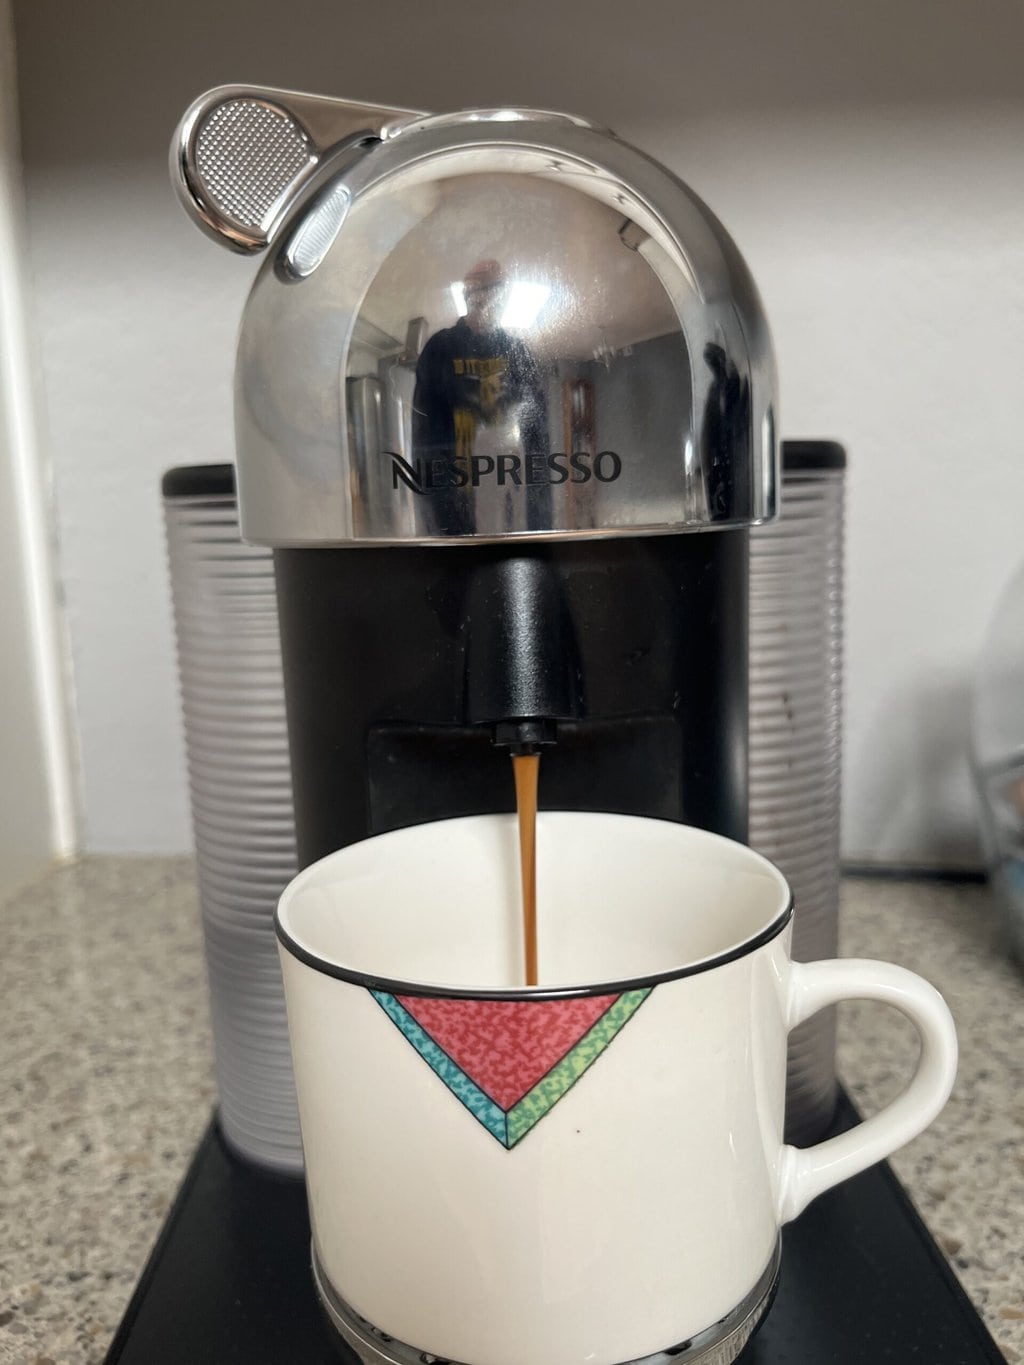 Nespresso Vertuo coffee and espresso maker